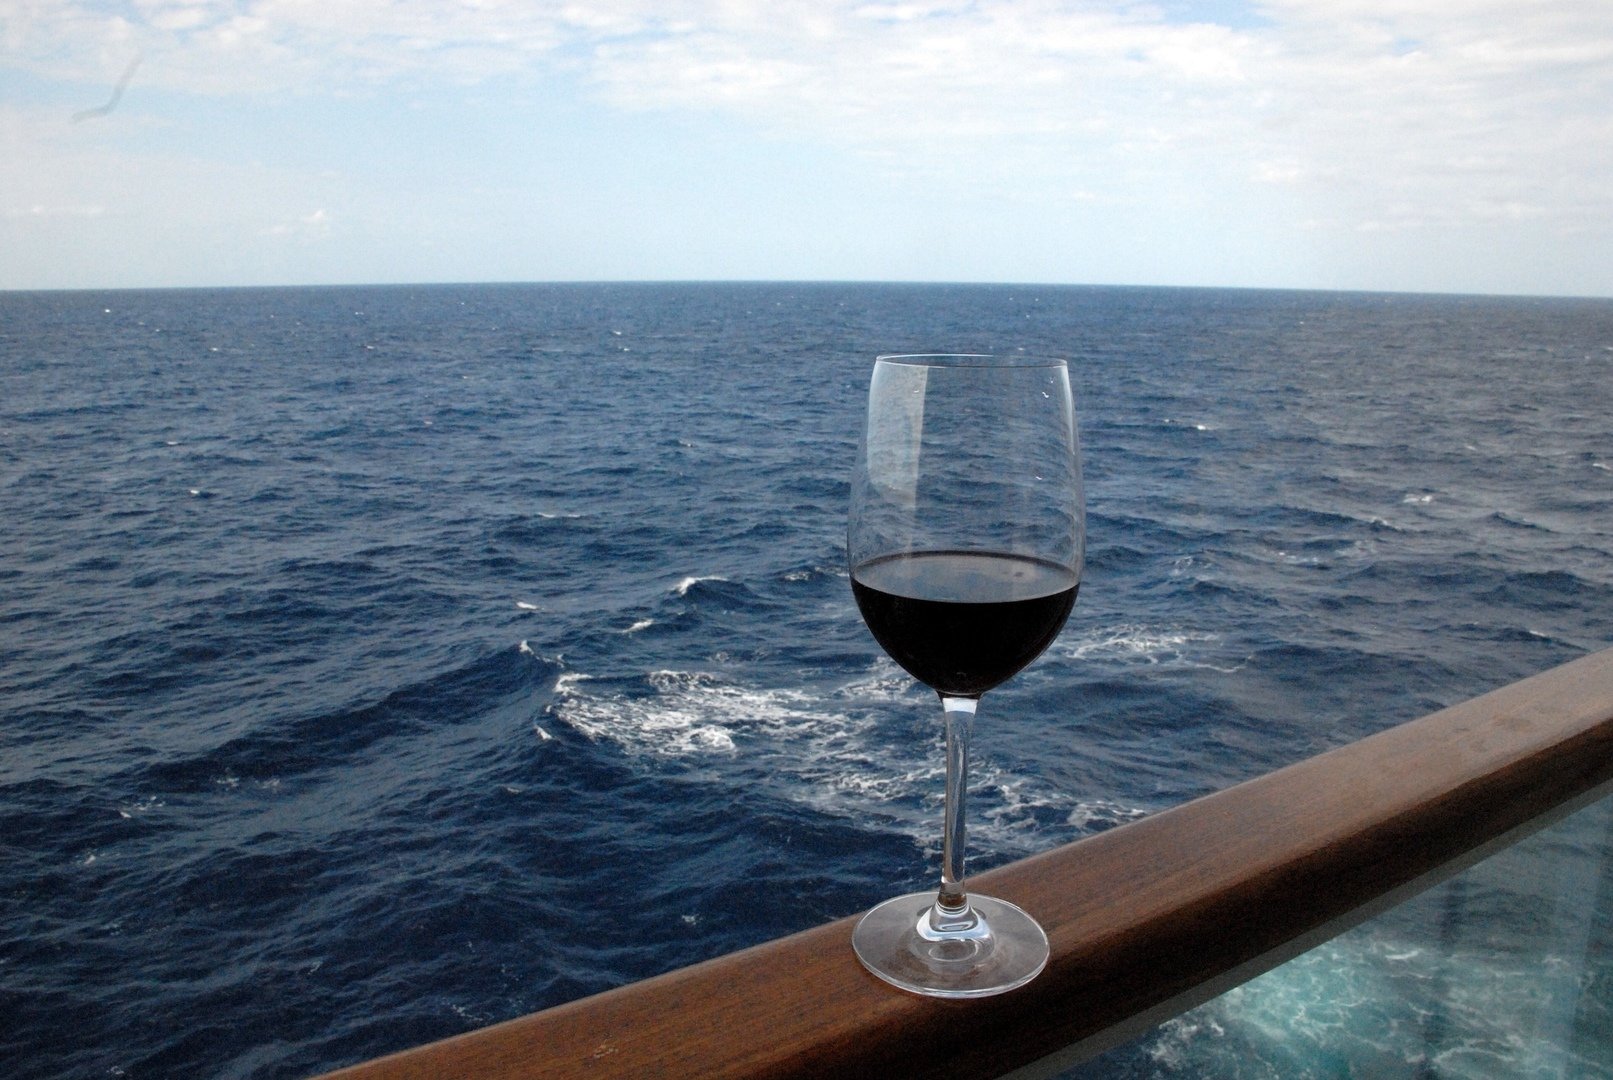 Бокал вина на фоне моря